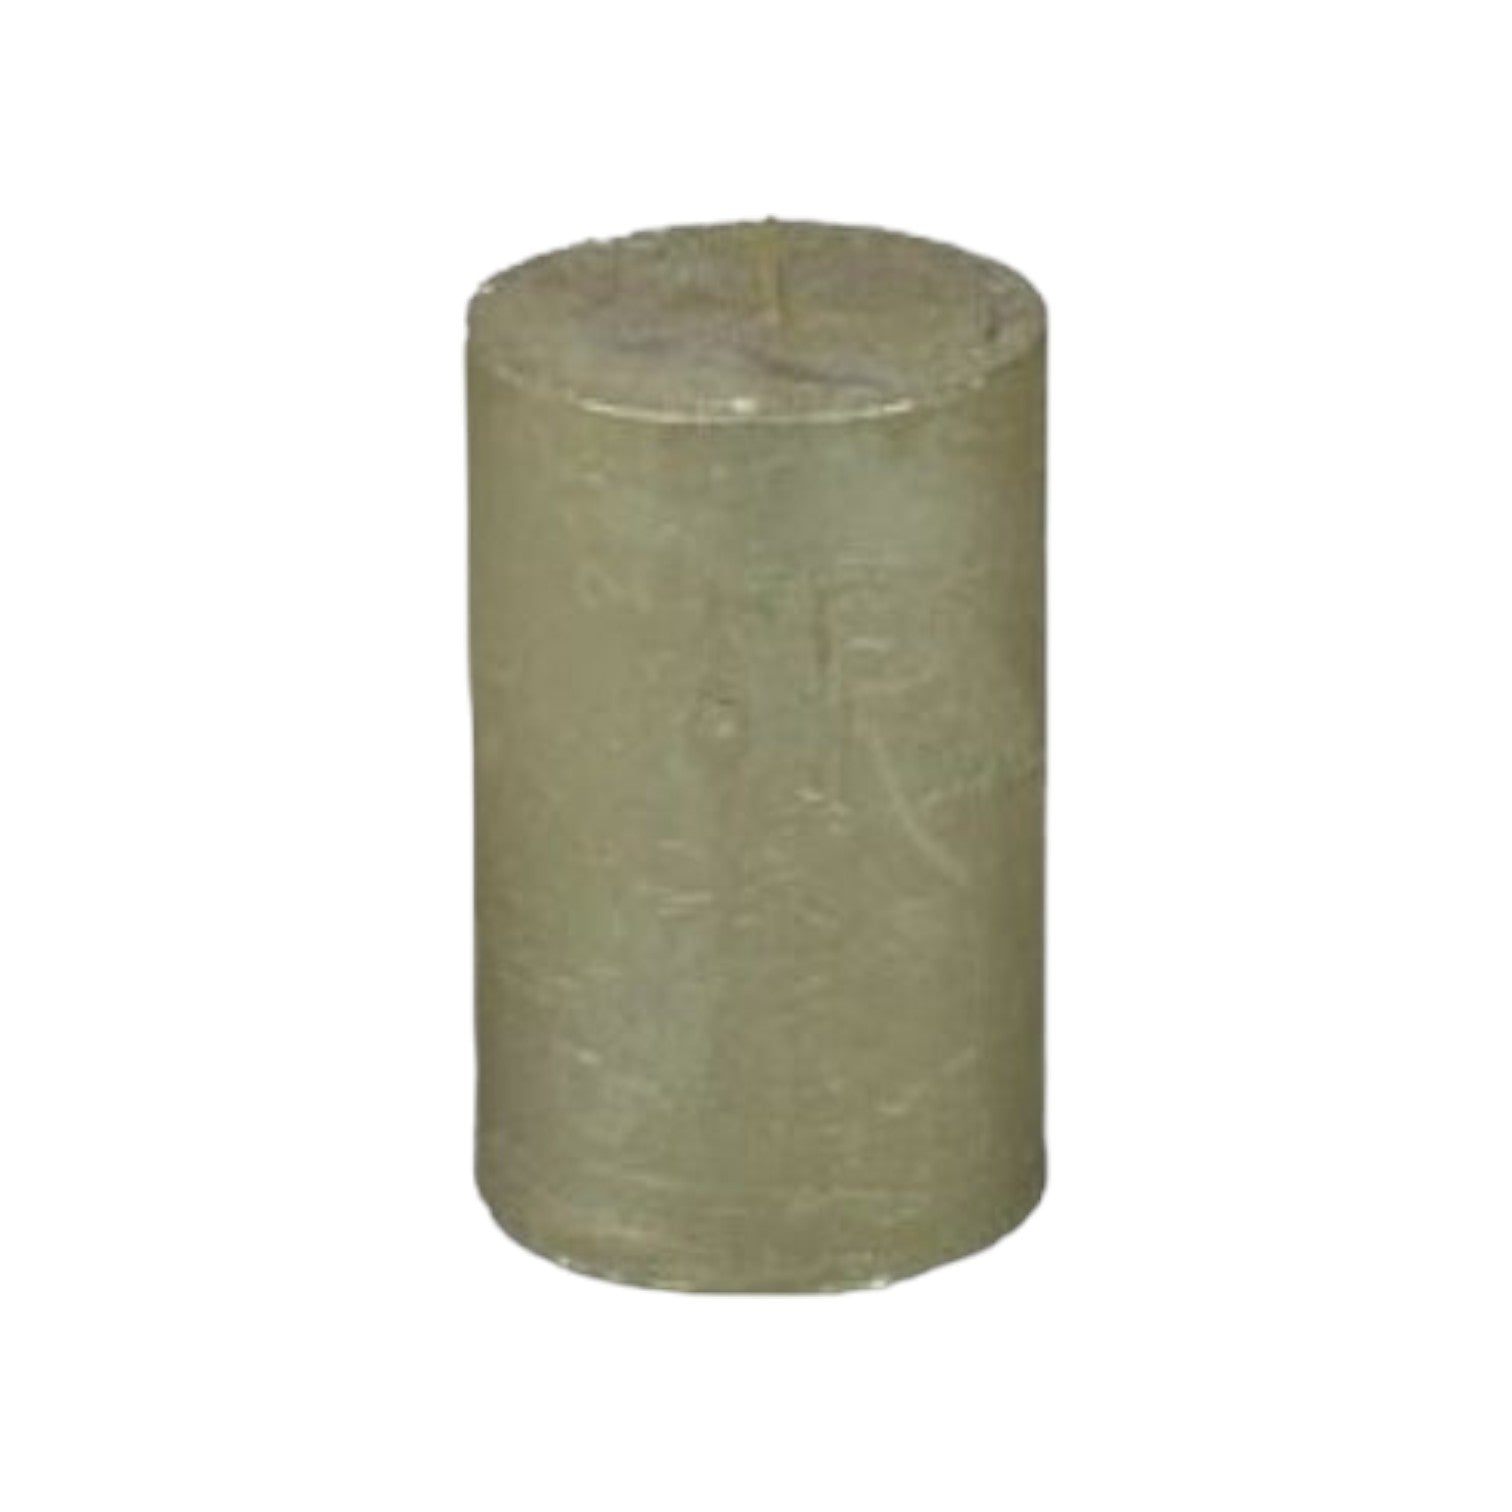 Branded By - Kaarsen 'Pillar' (Ø5cm x 8cm) - Bronze (set van 9)